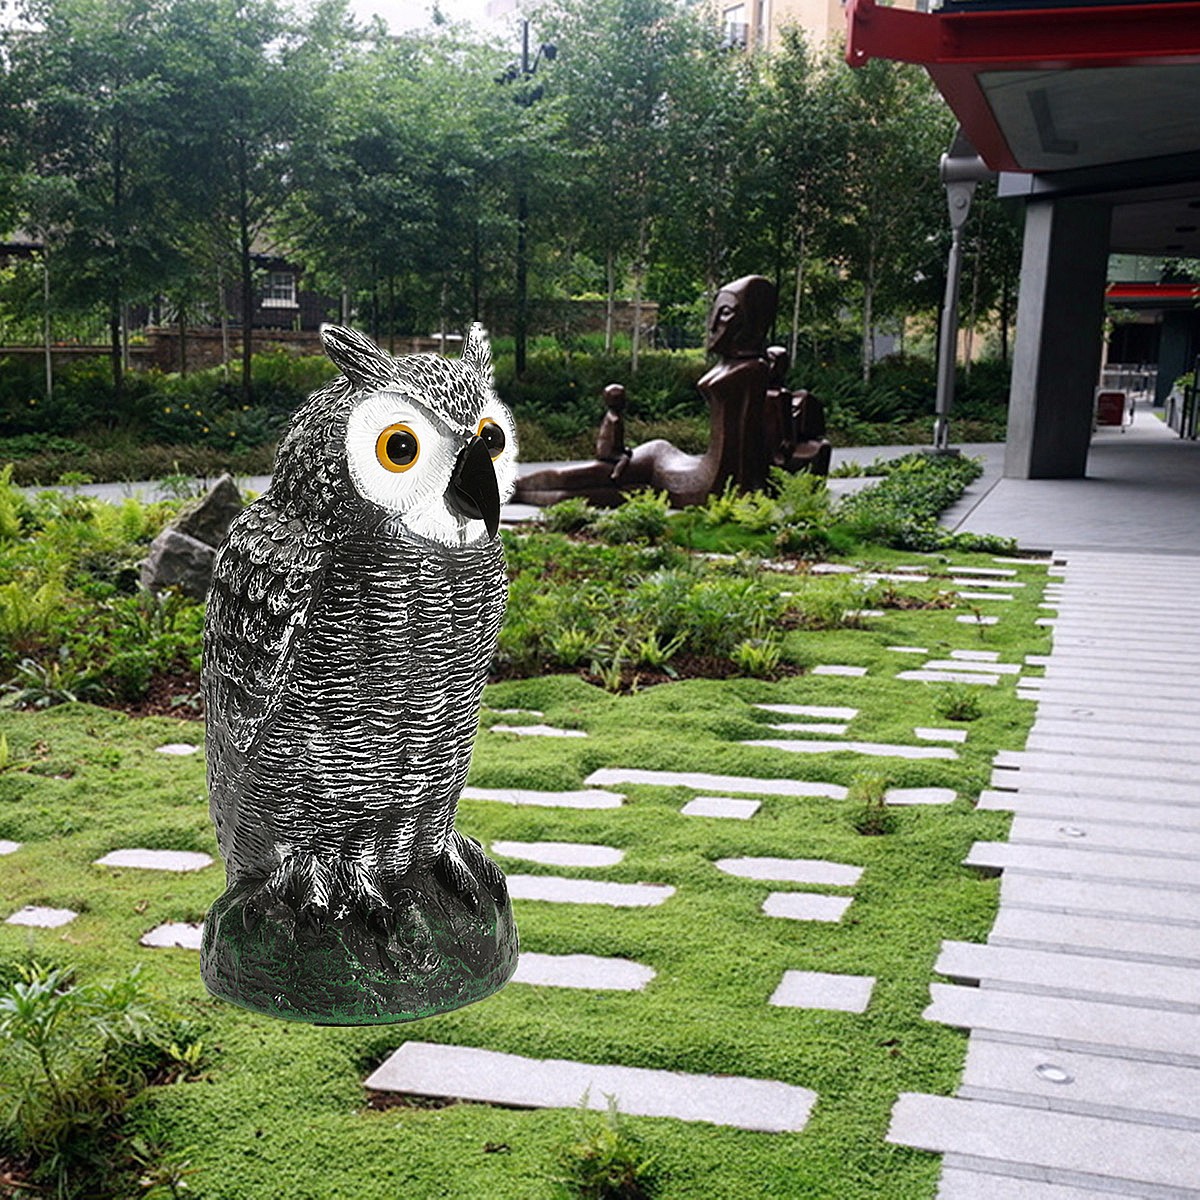 Realistic-Bird-Scarer-Owl-Decoy-Repellent-Pest-Scarecrow-Outdoor-Garden-Yard-1865810-9